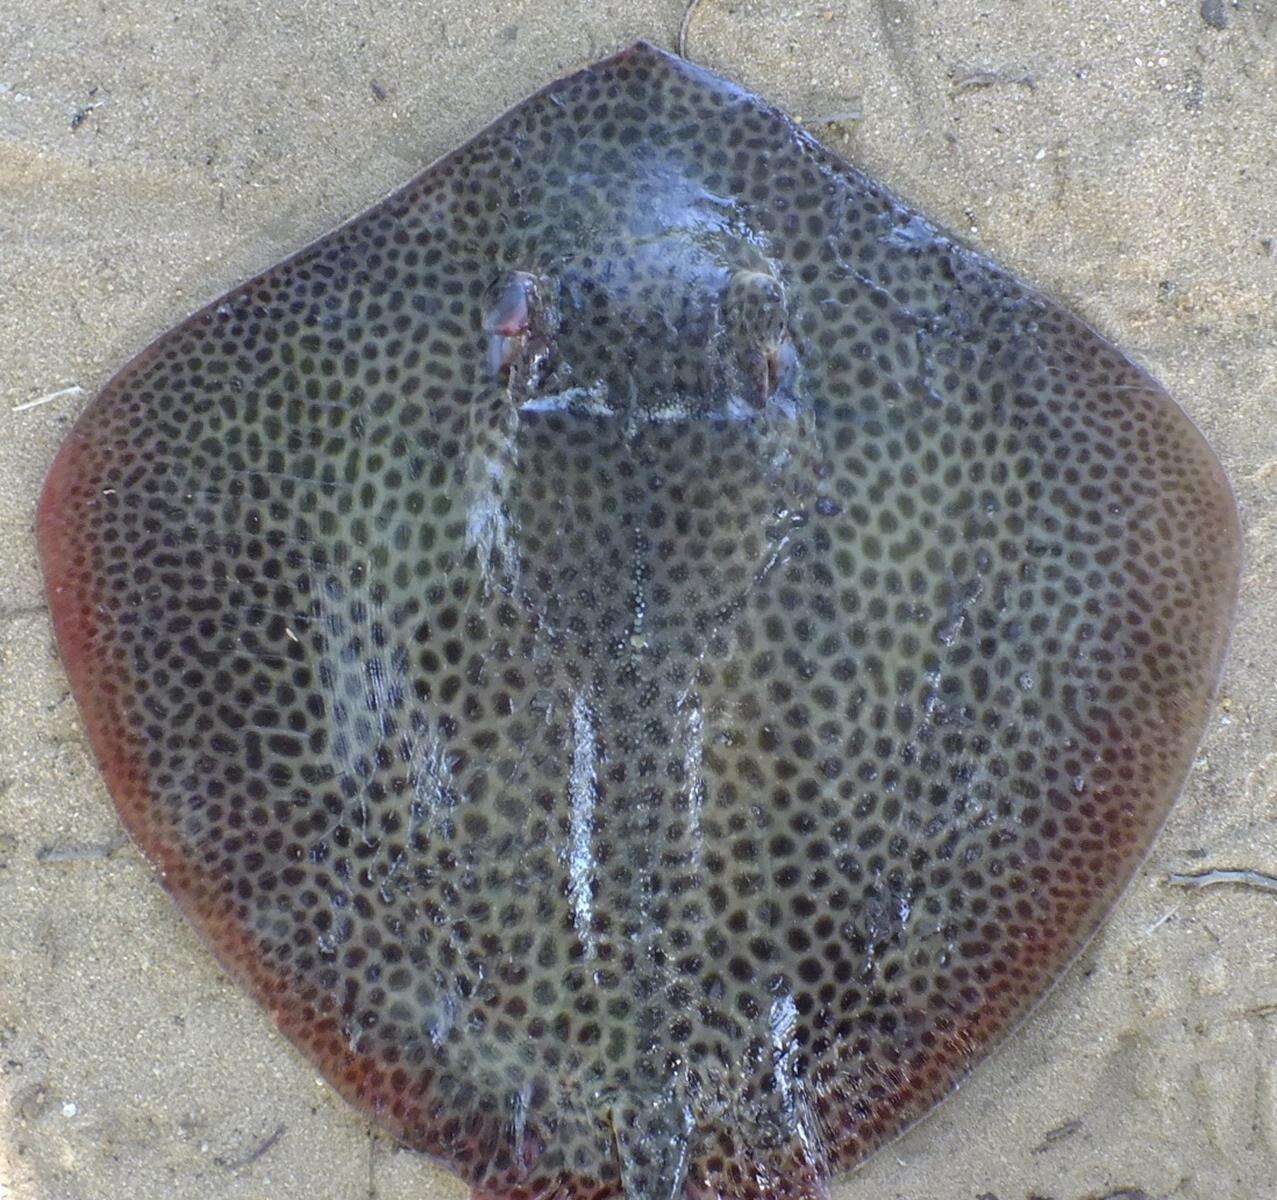 Image of Honeycomb Stingray